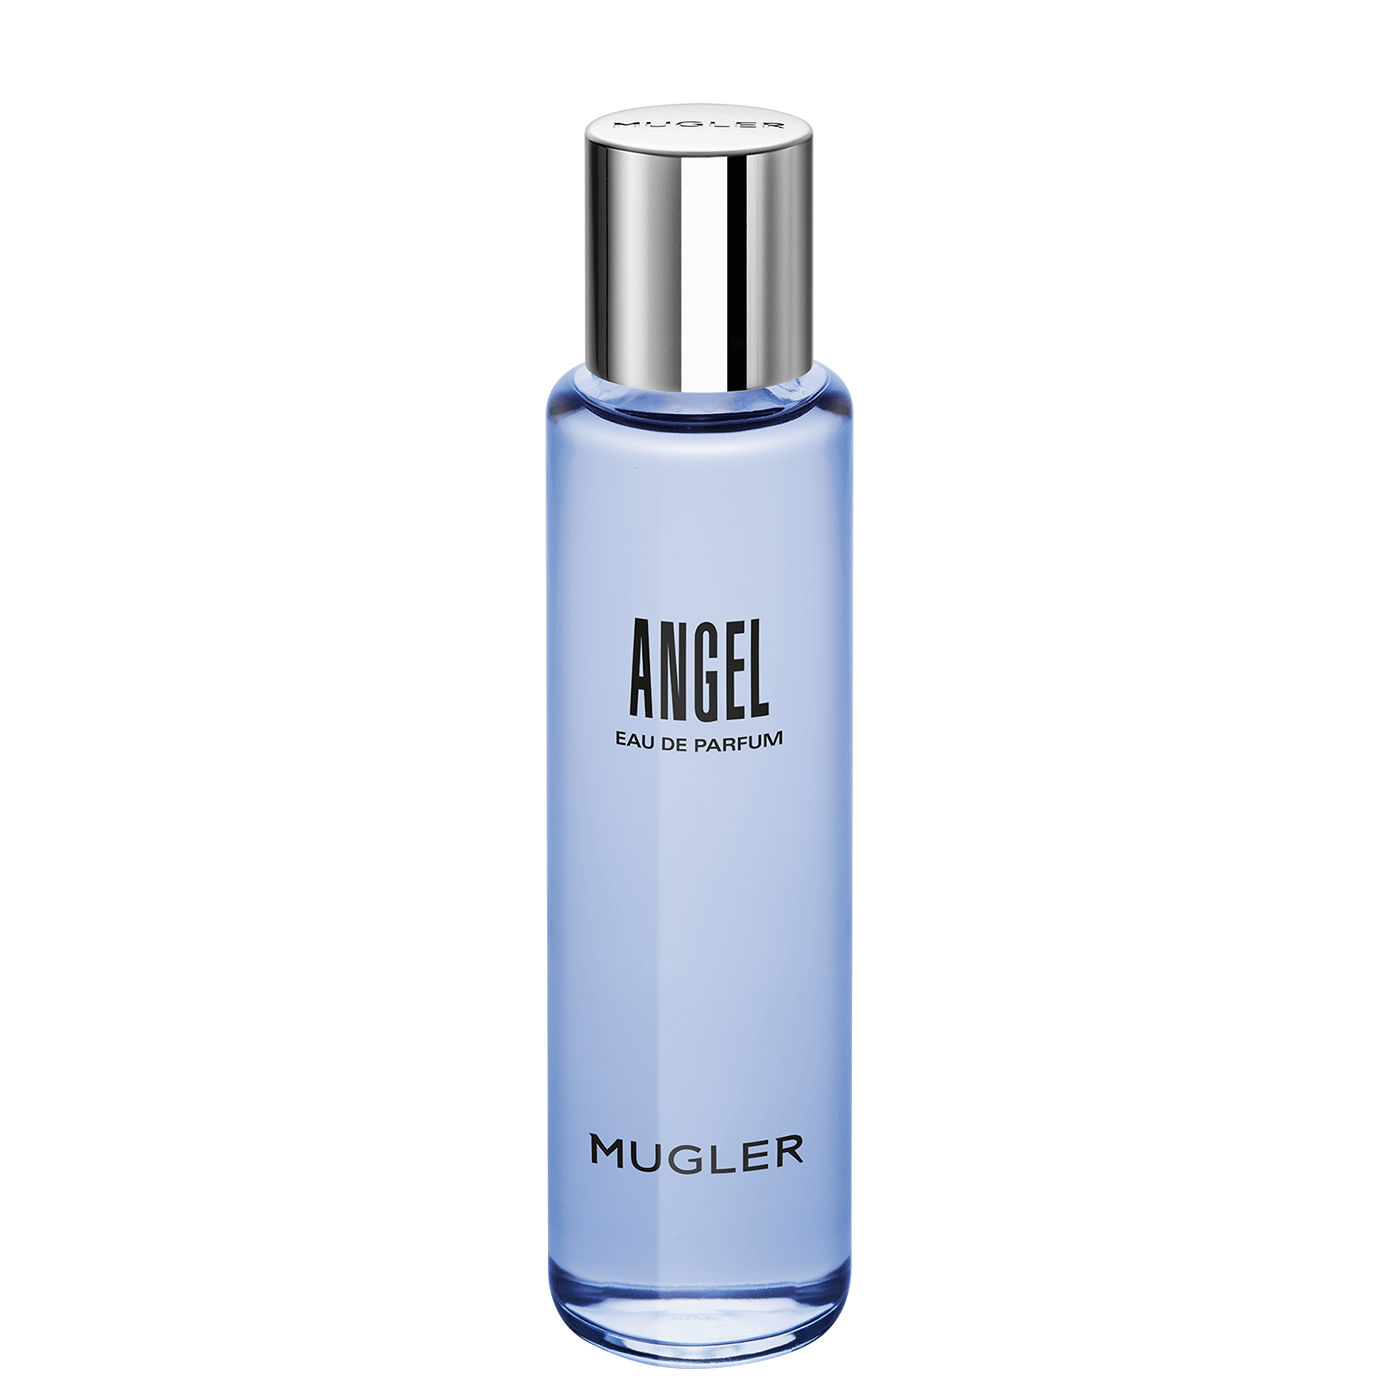 Angel Eau de Parfum Refill Bottle - MUGLER